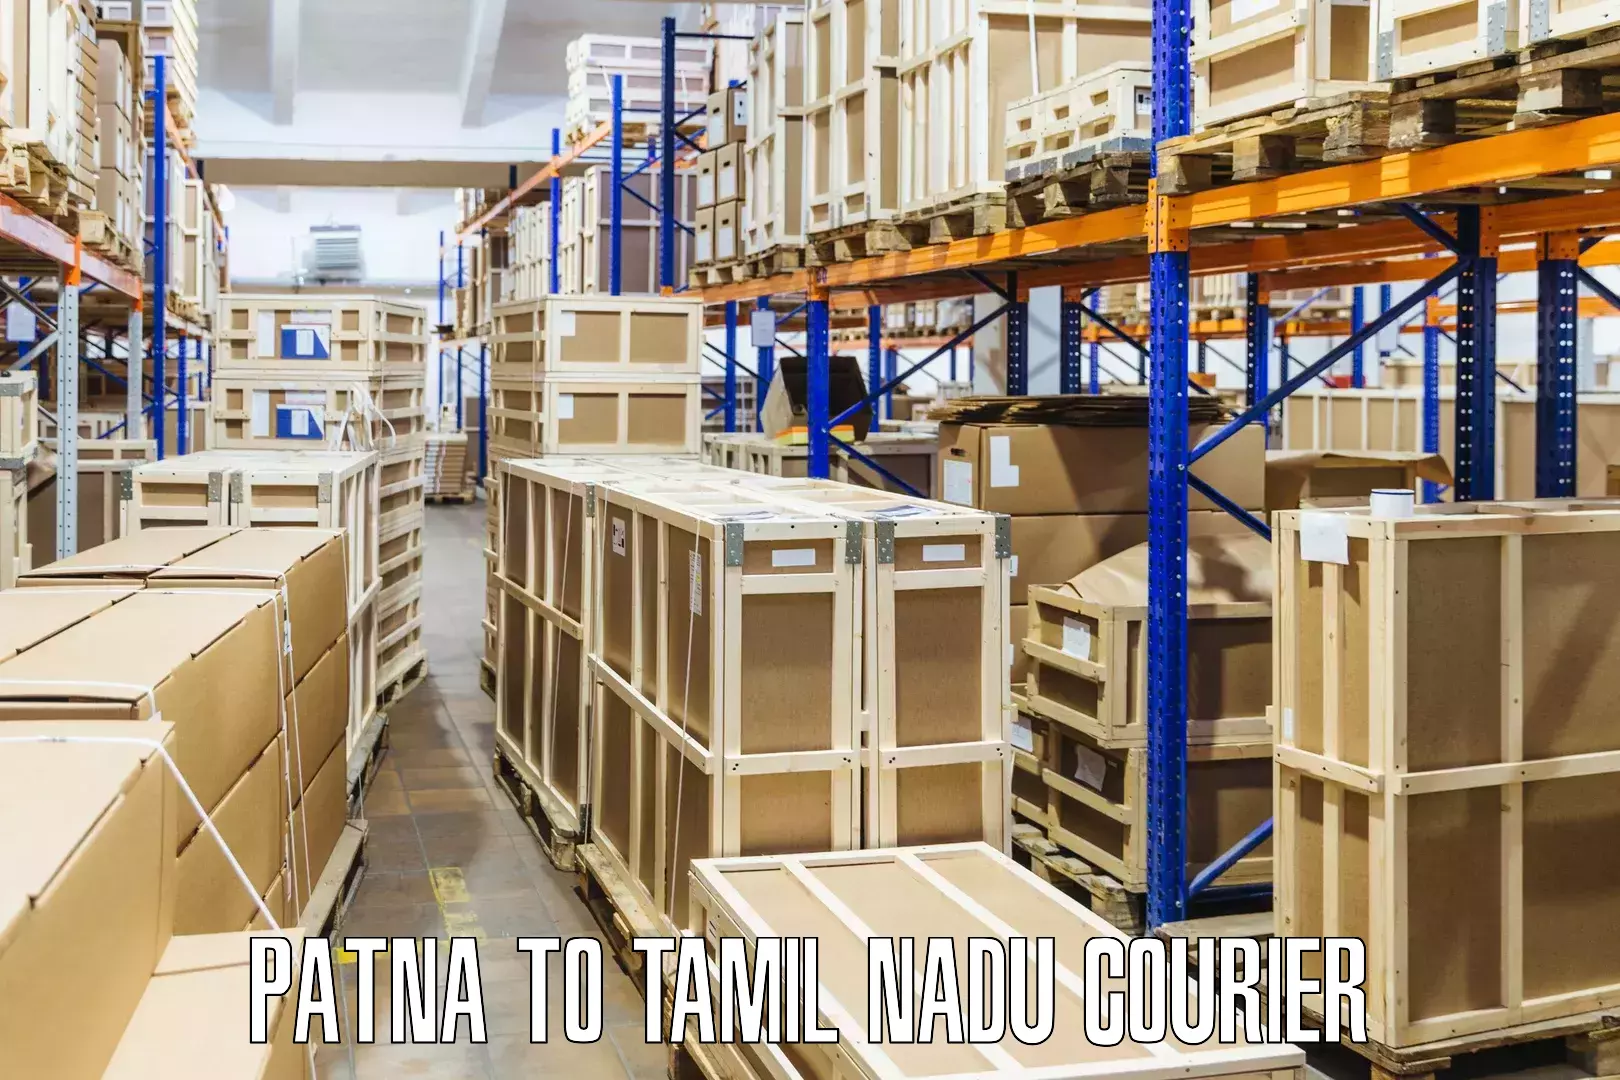 Quick dispatch service in Patna to Tamil Nadu